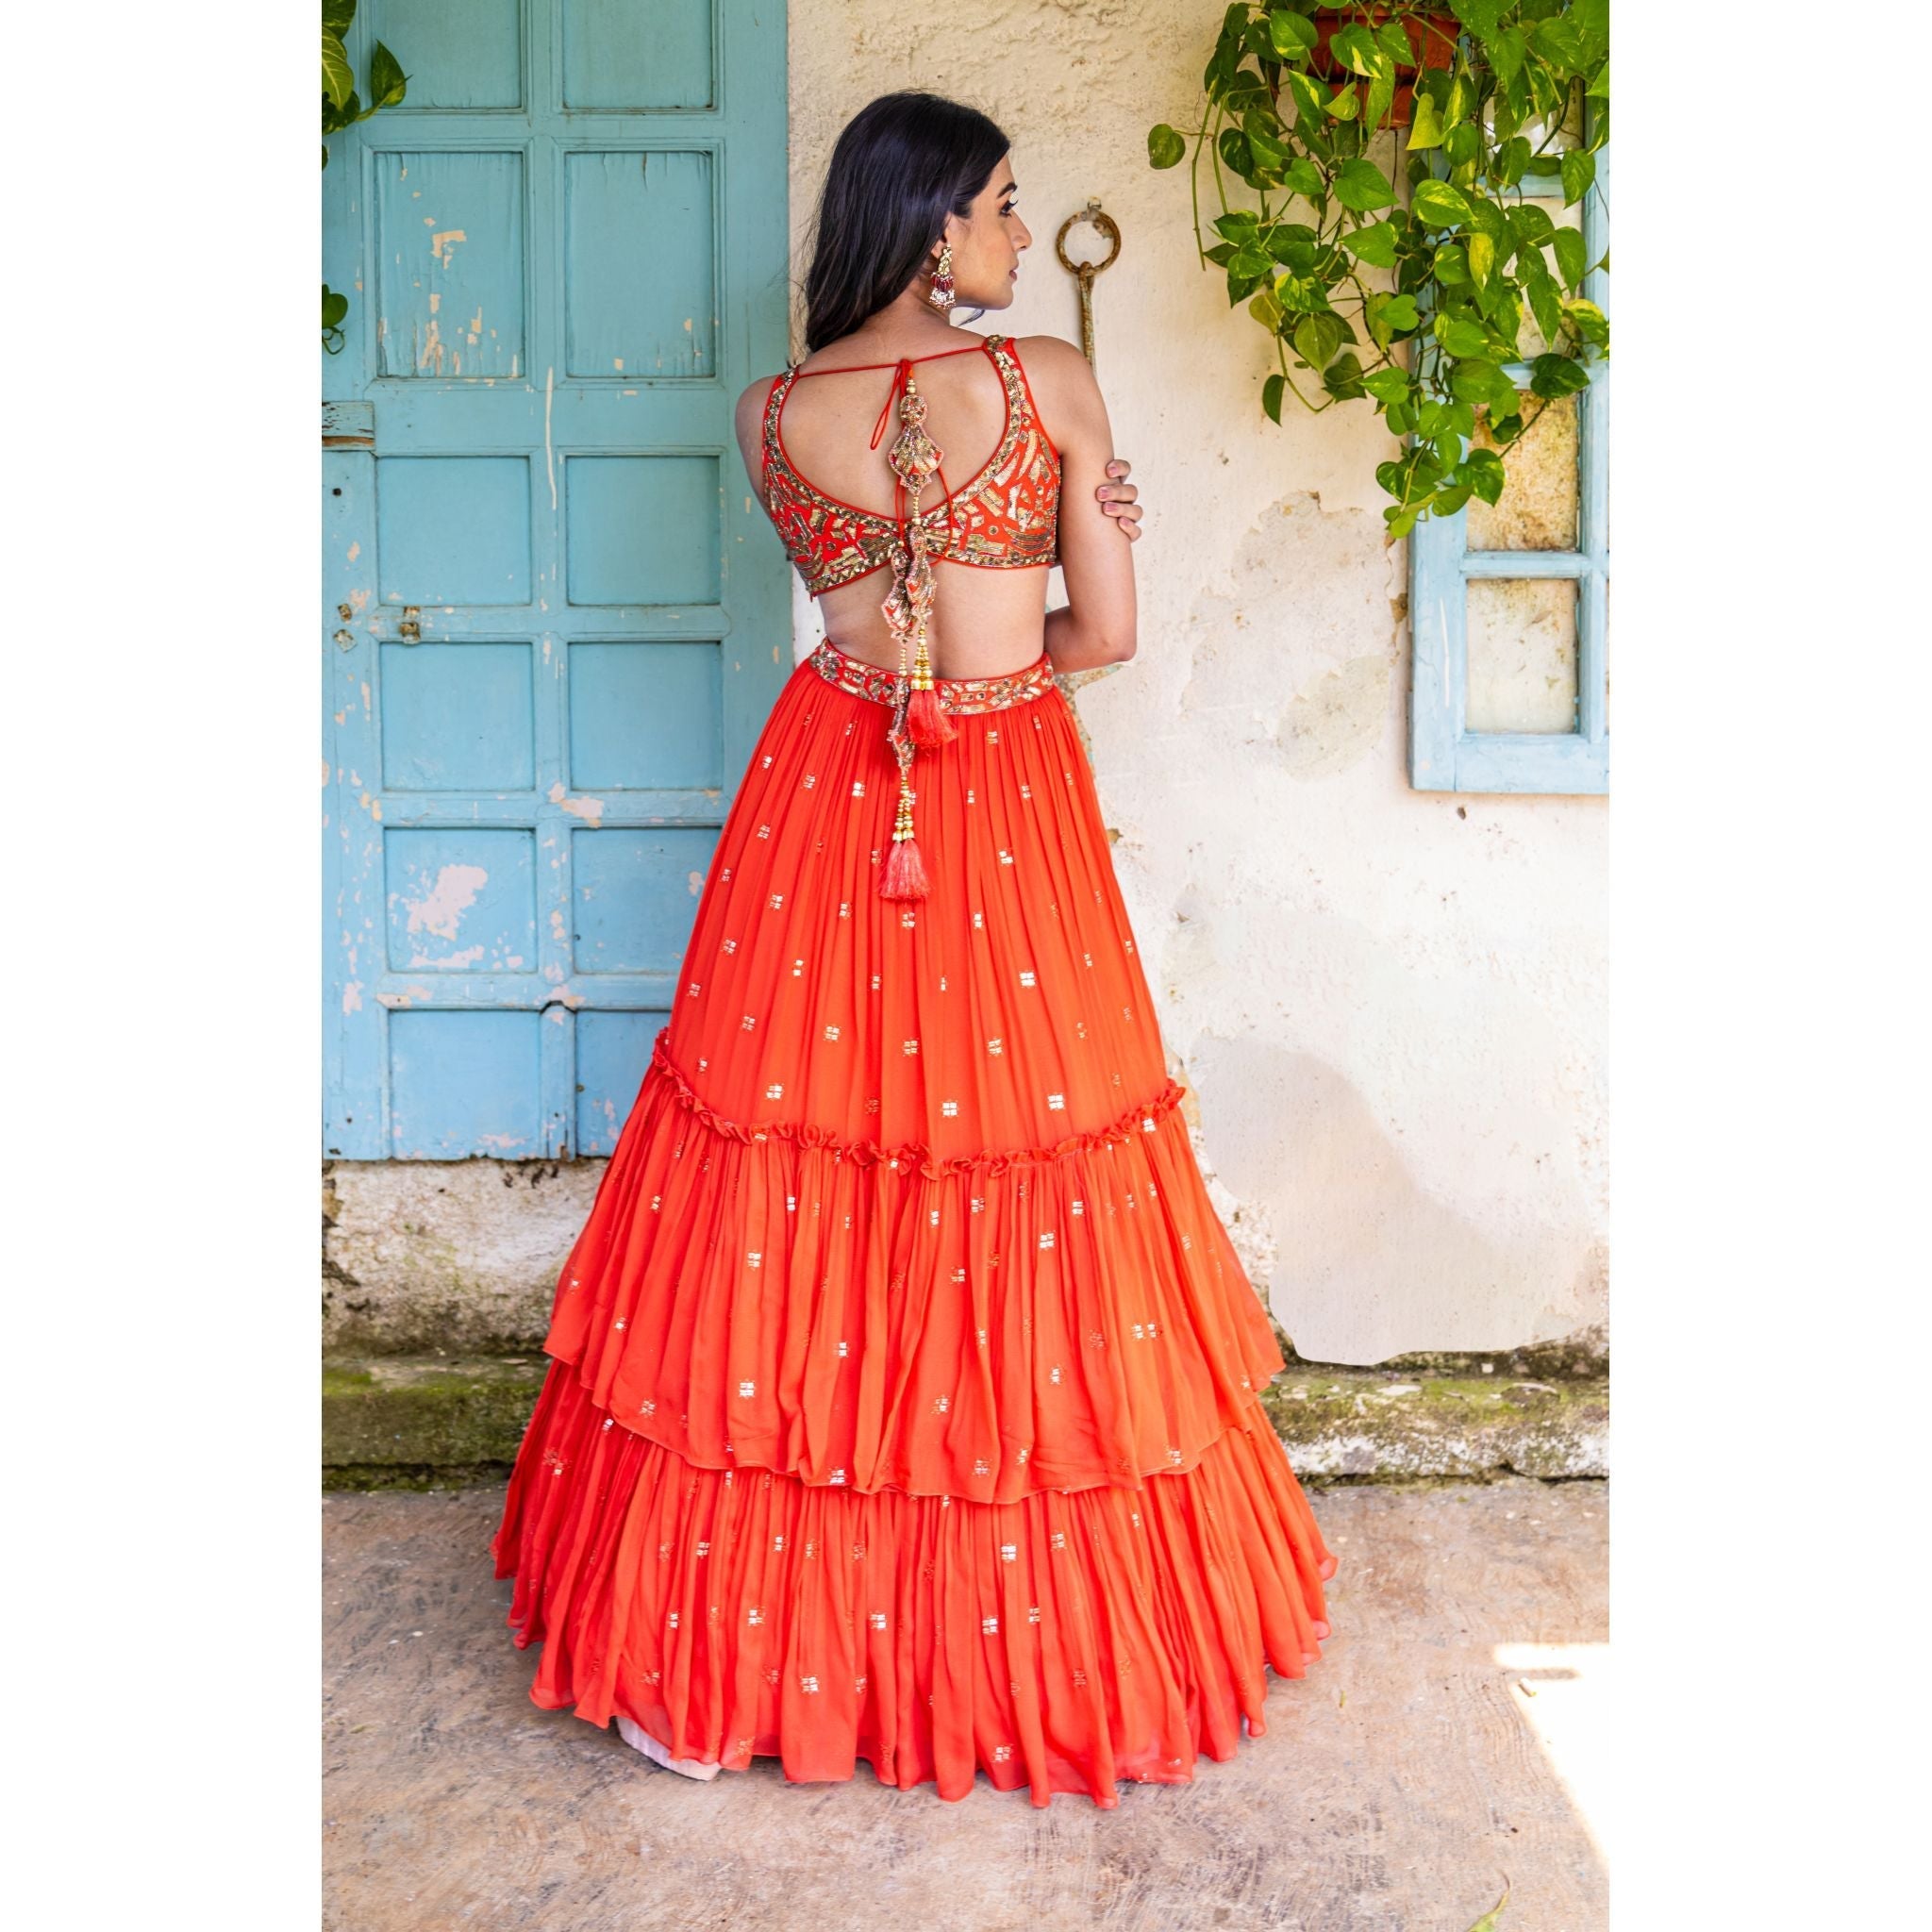 Vermillion Orange Tiered Gown - Indian Designer Bridal Wedding Outfit